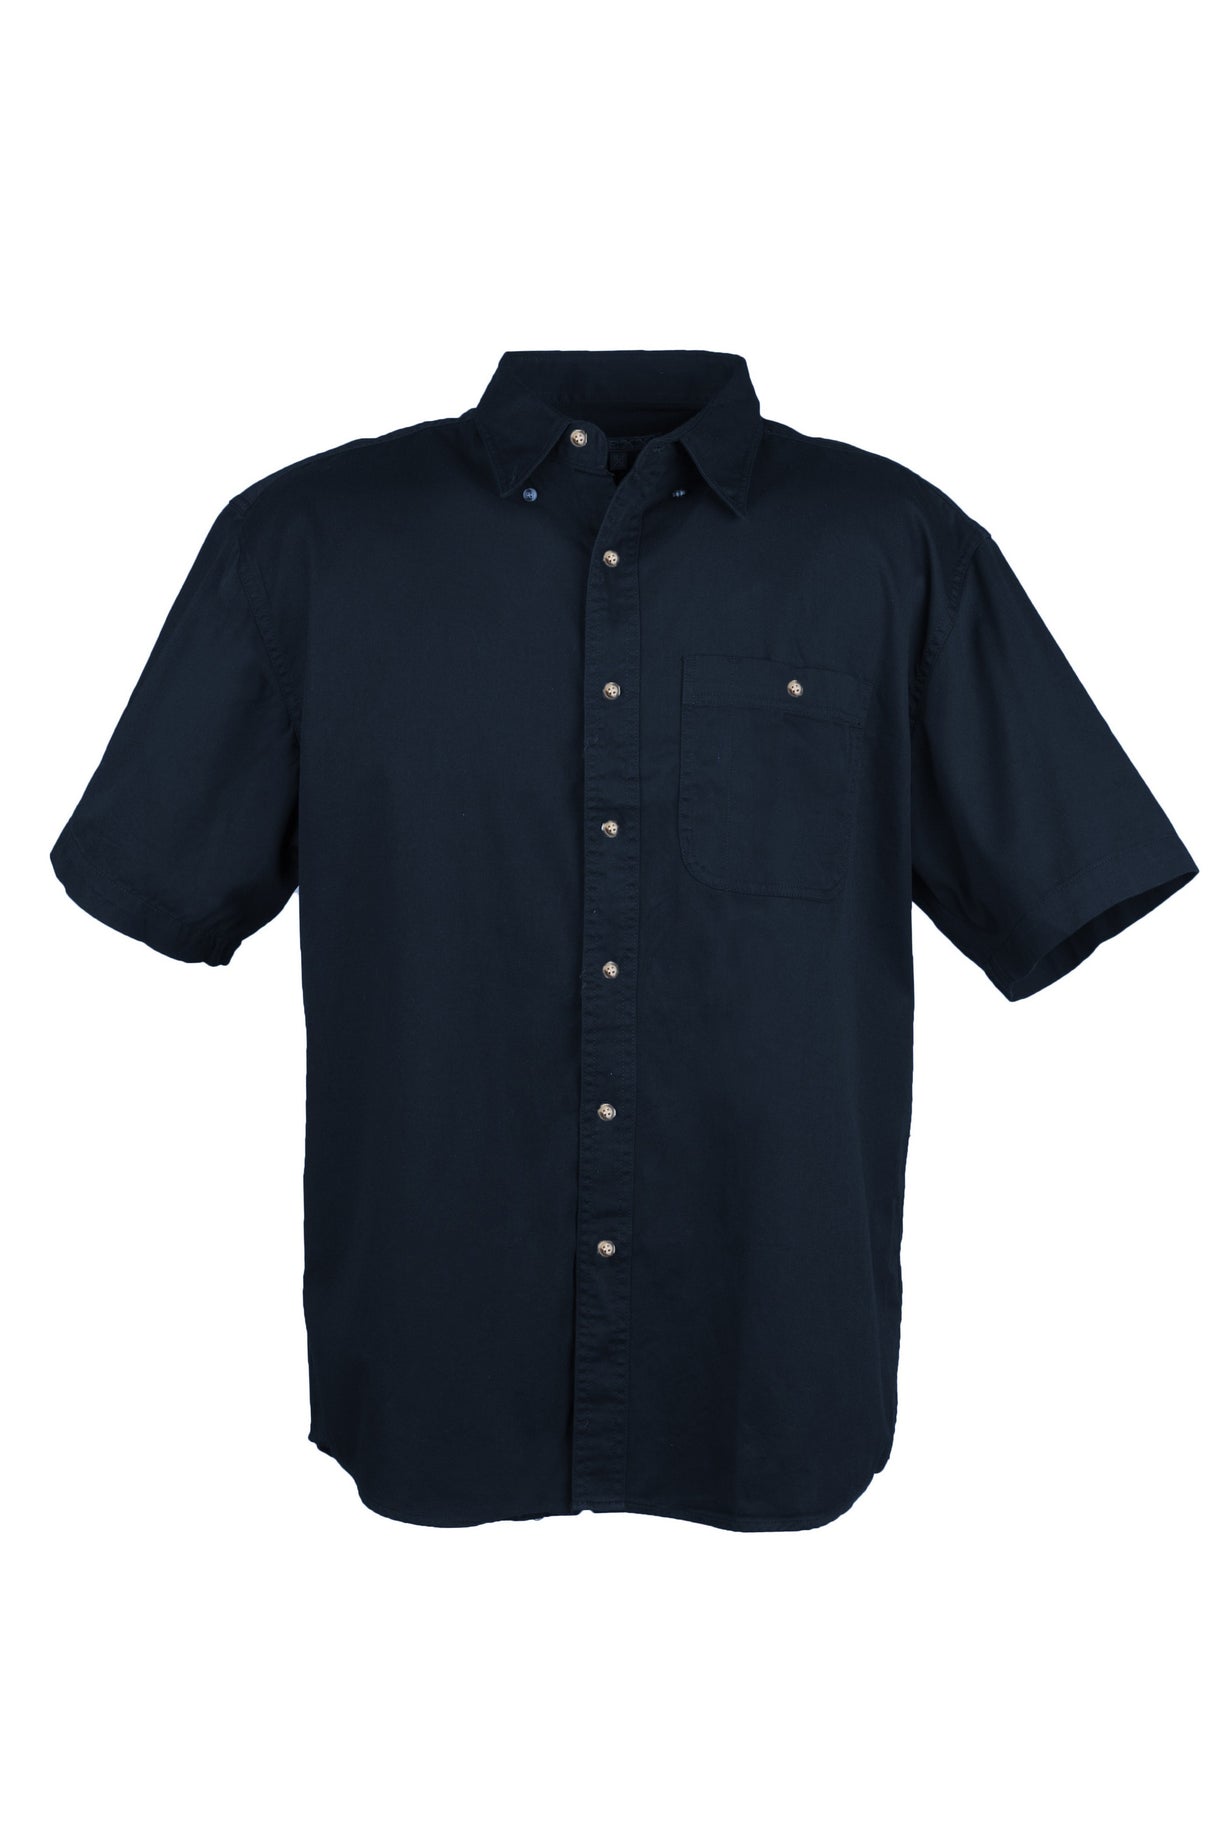 Men's 100% Cotton Twill Short Sleeve Shirt Tall (Navy Blue) (LT-3XLT)